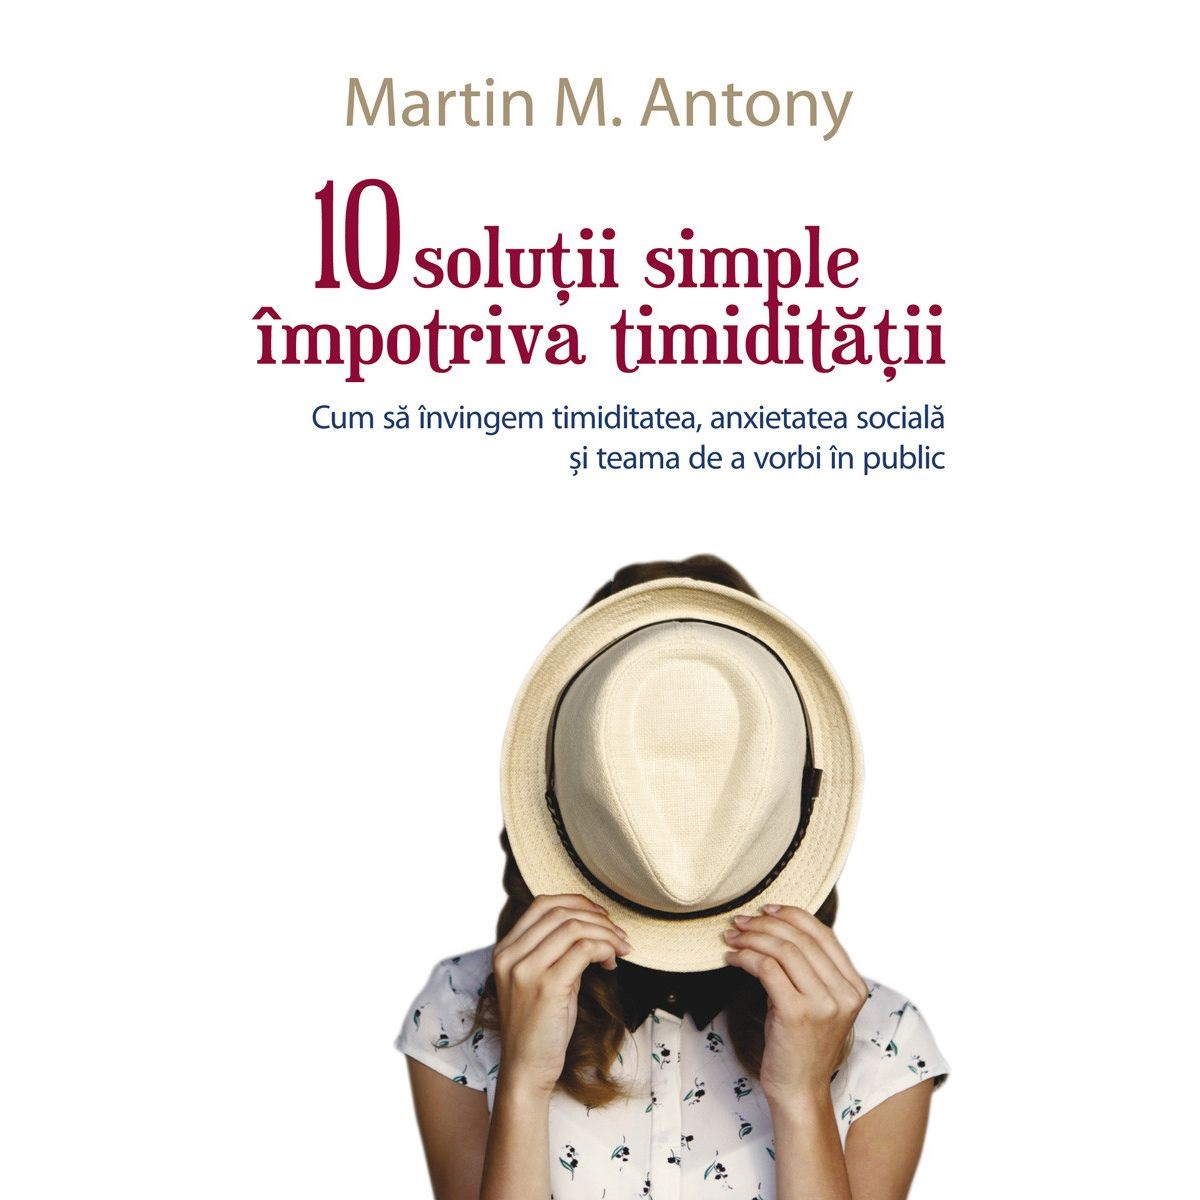 10 solutii simple impotriva timiditatii | Martin M. Antony